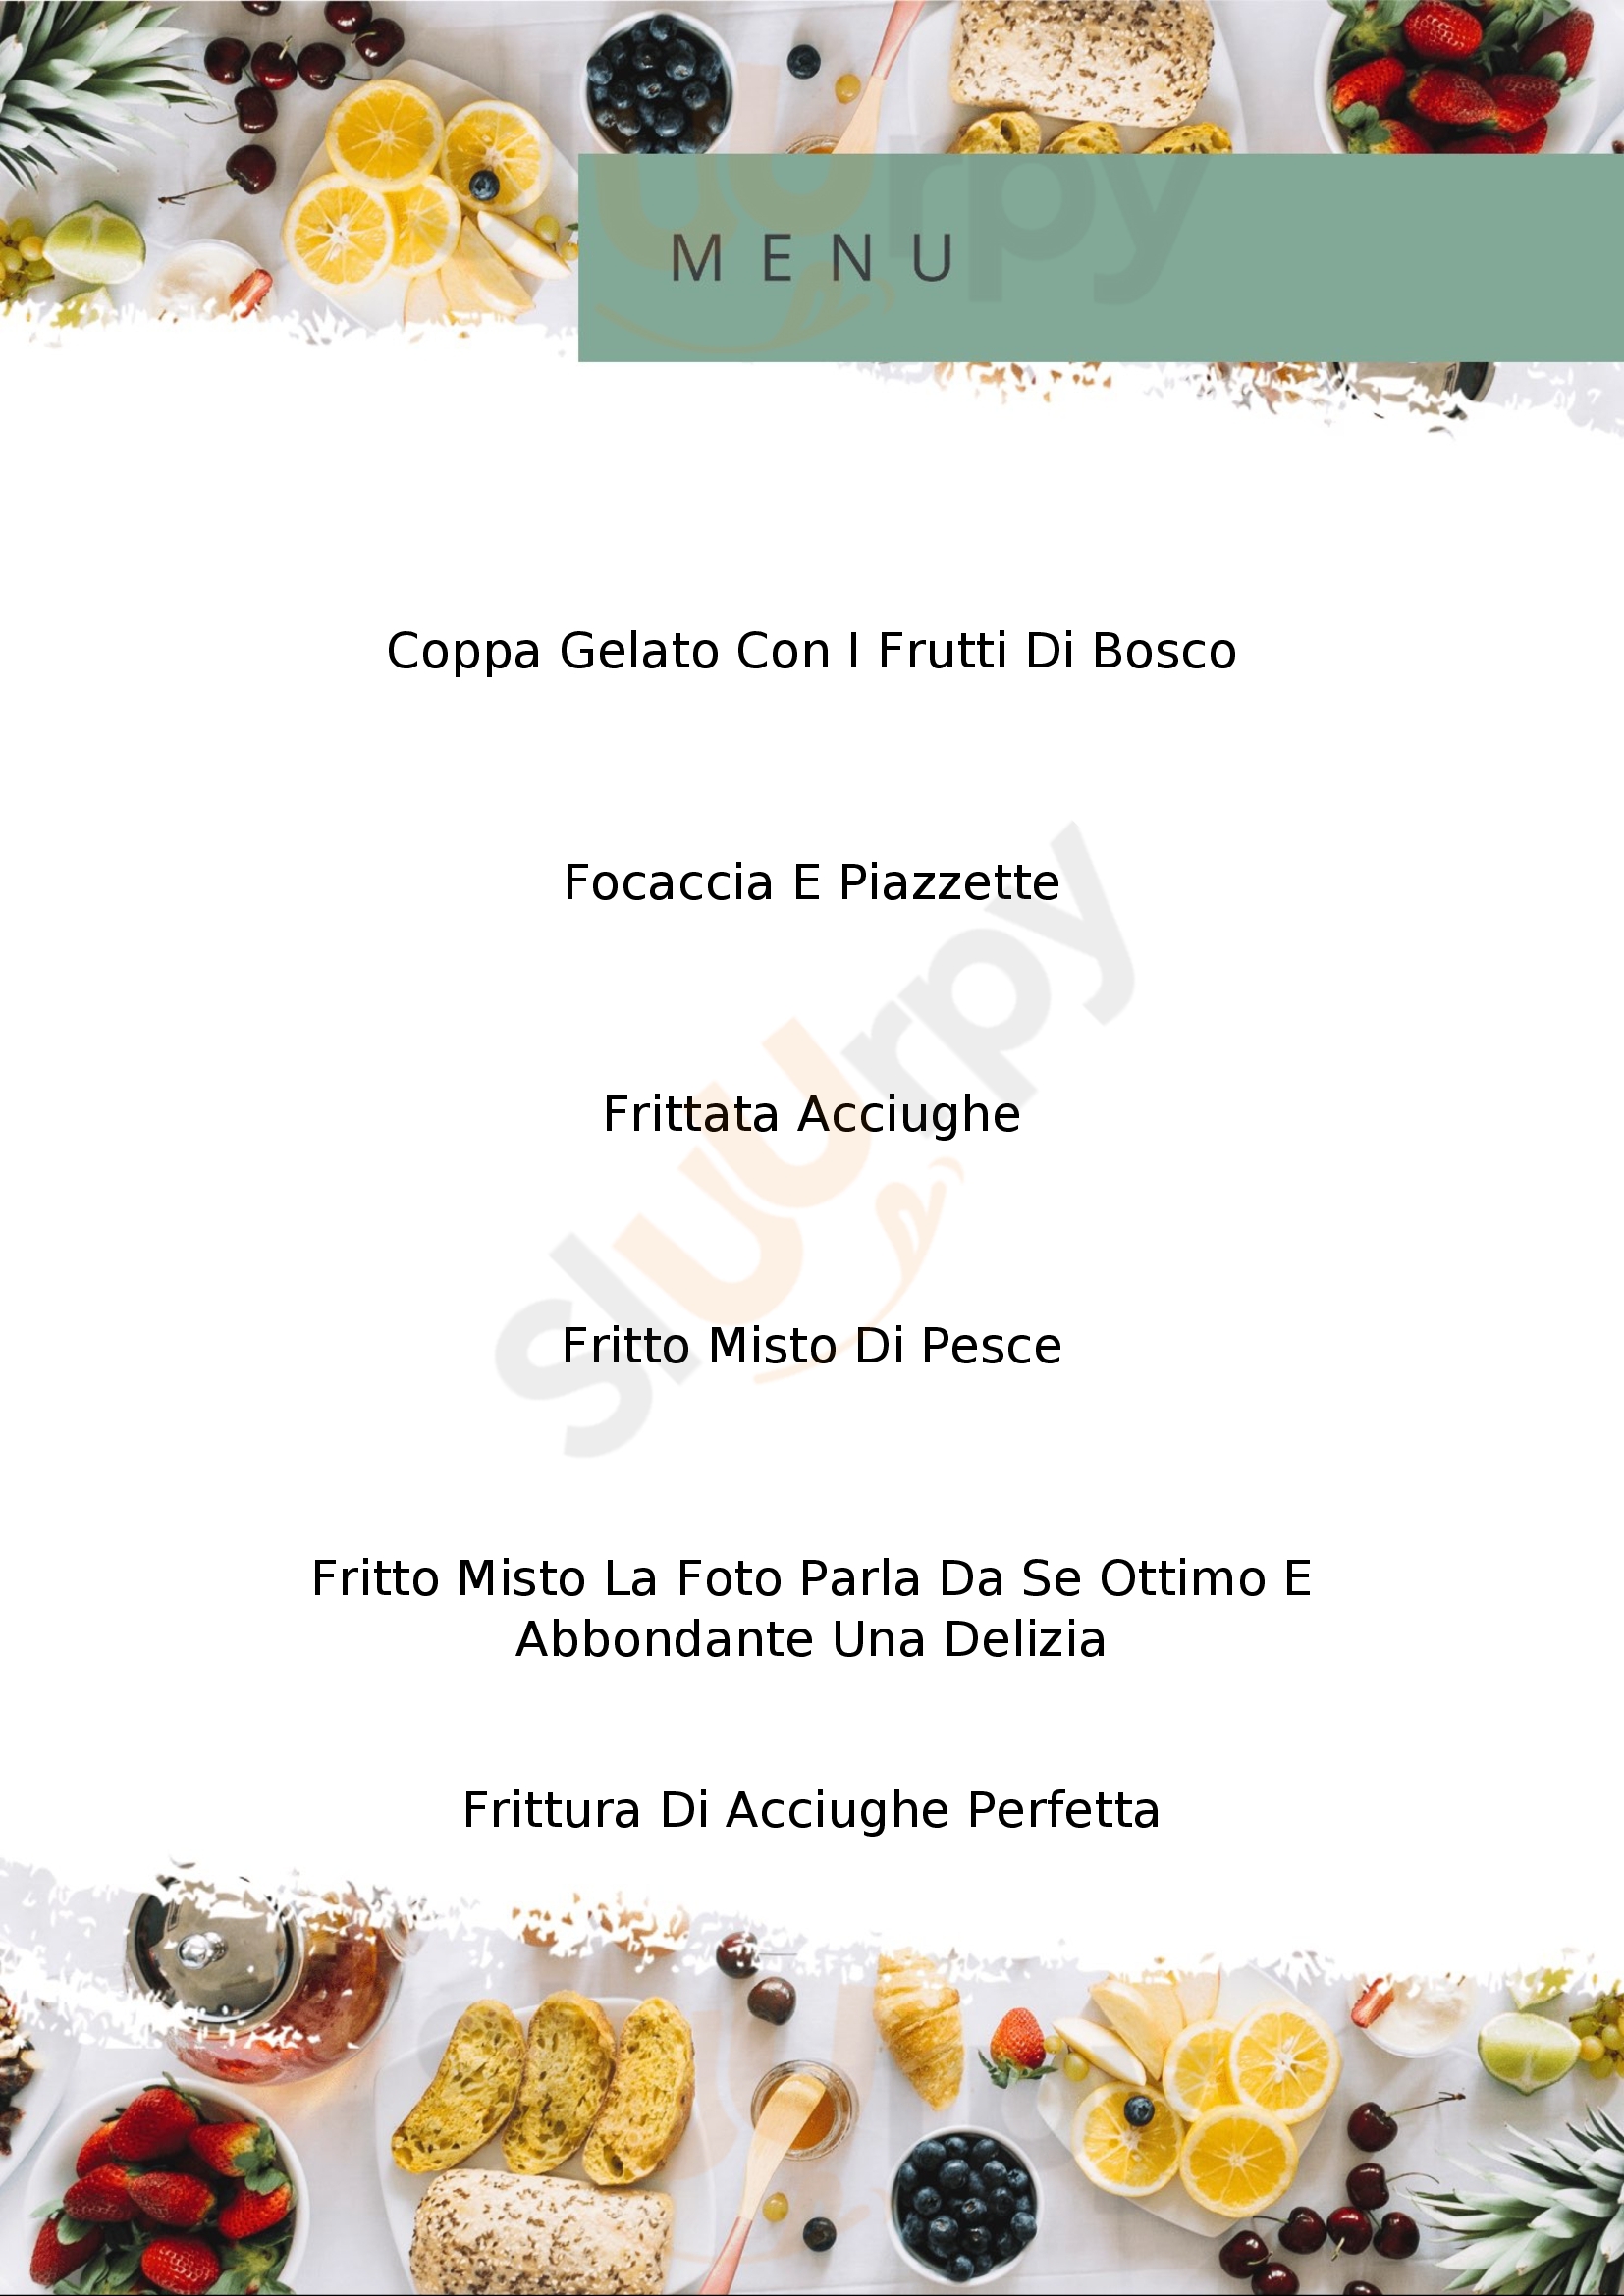 Cucina Tipica La Palma Santo Stefano al Mare menù 1 pagina